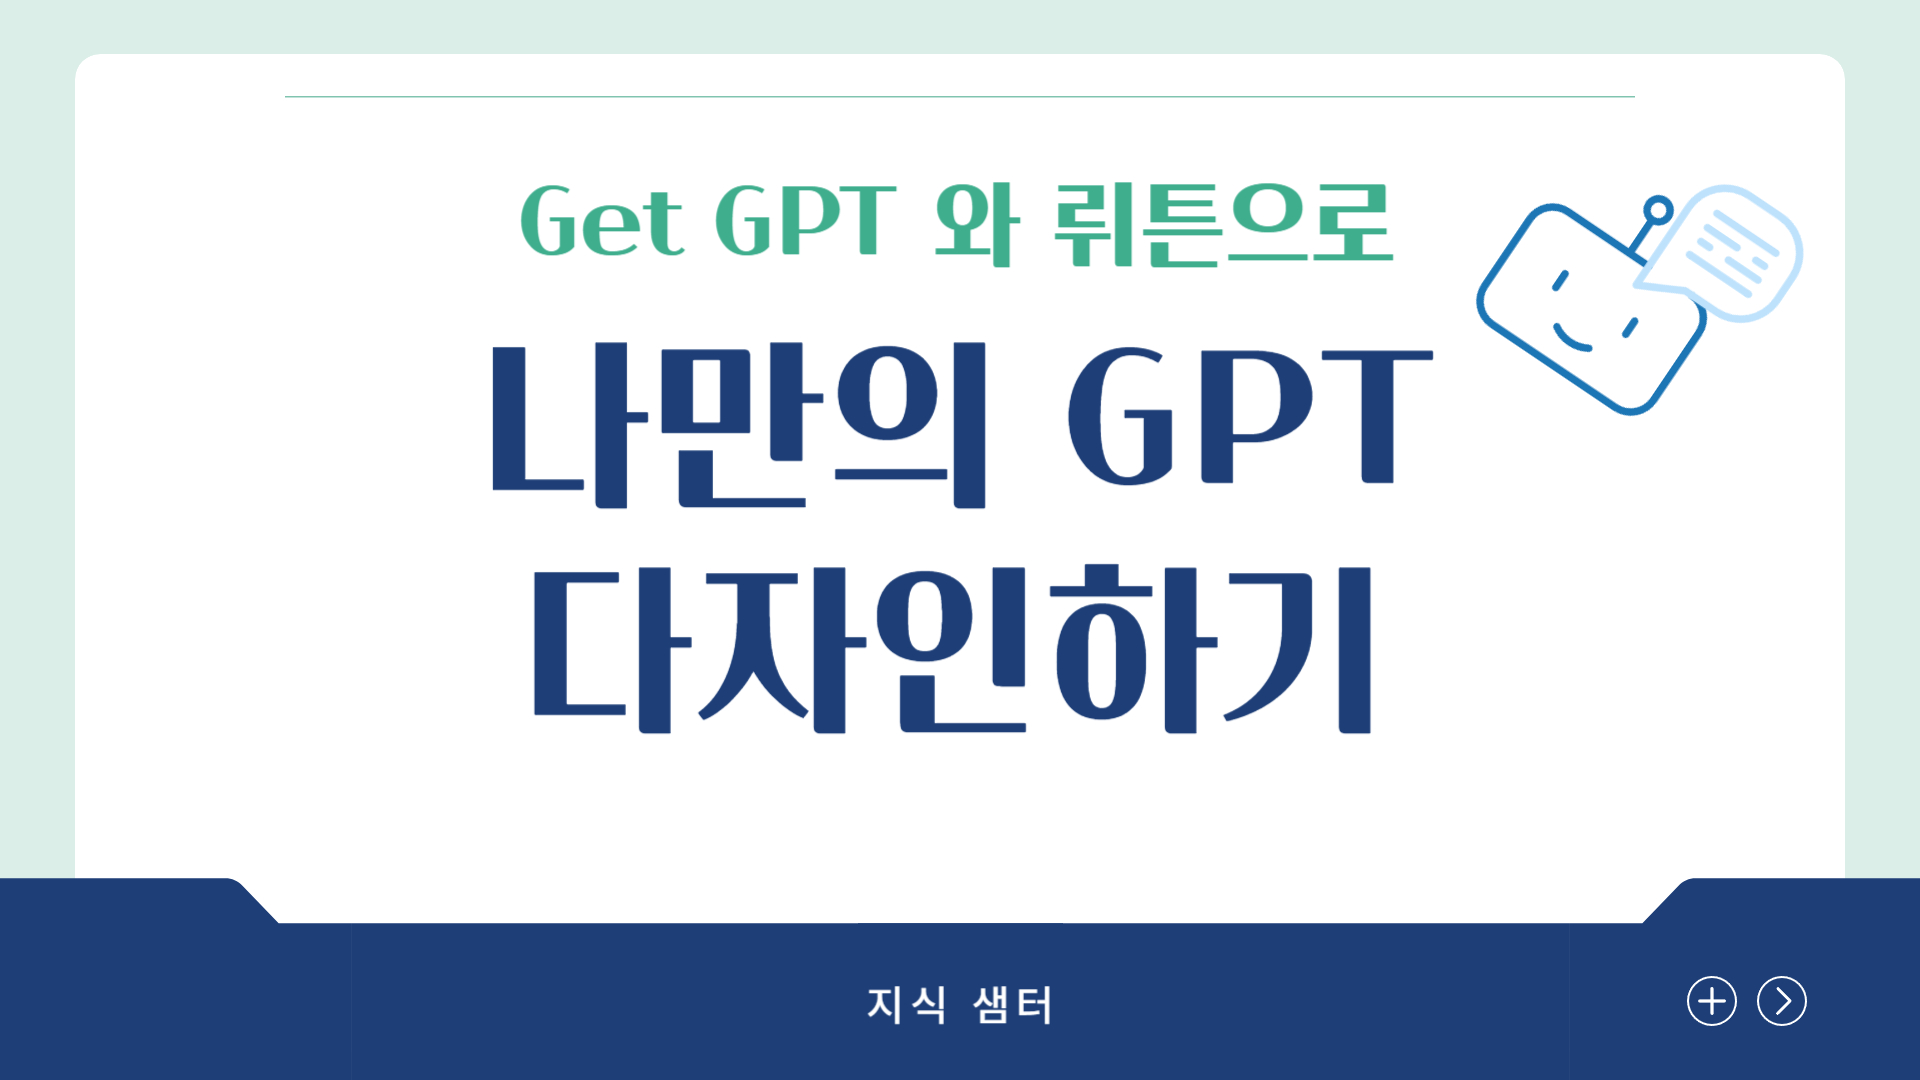 Get GPT, 뤼튼으로 나만의 GPT 만들기(4기)